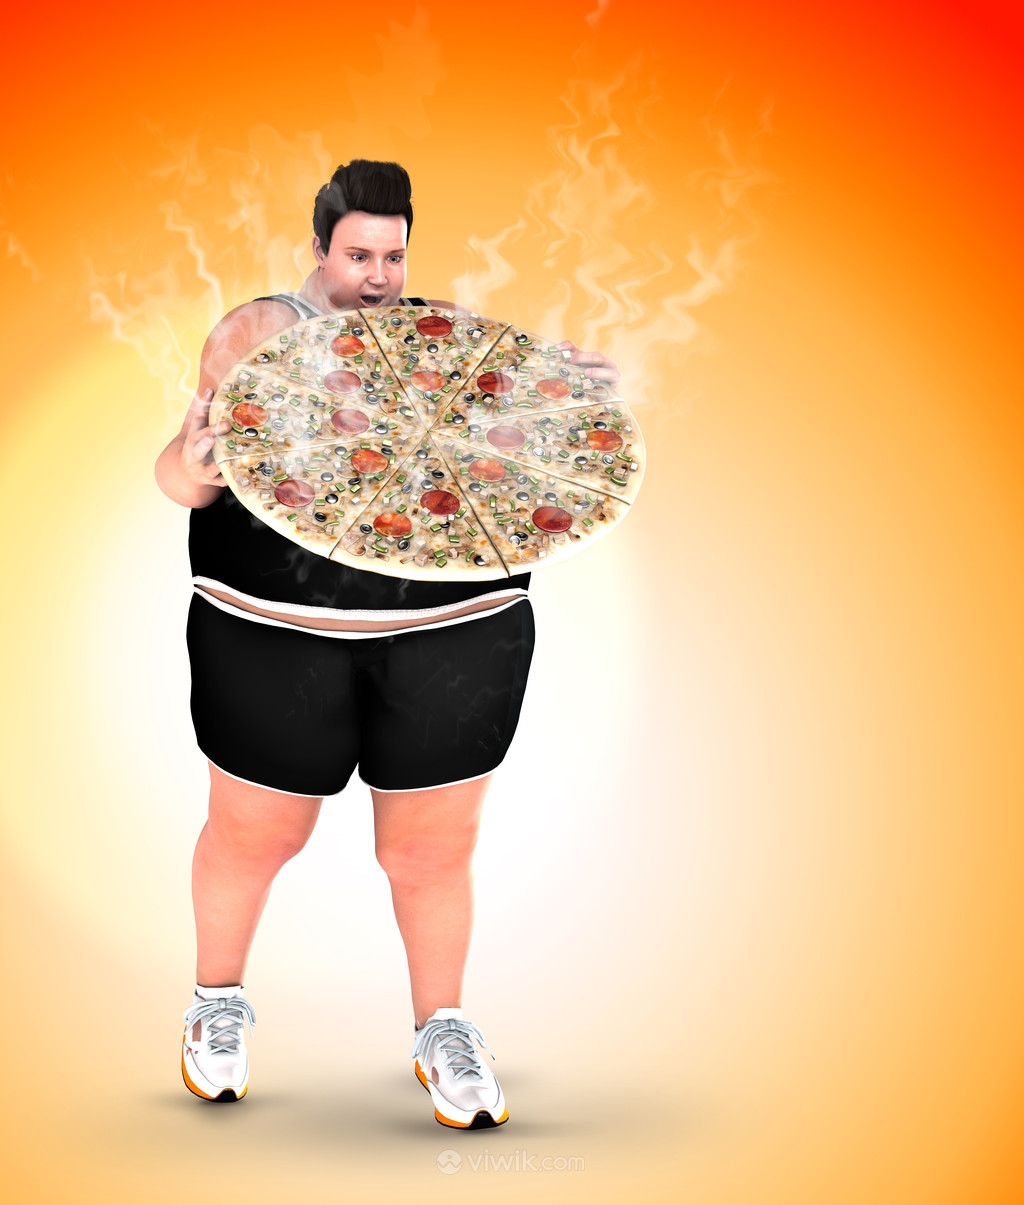 吃油腻不健康食品的肥胖患者健身美容图片